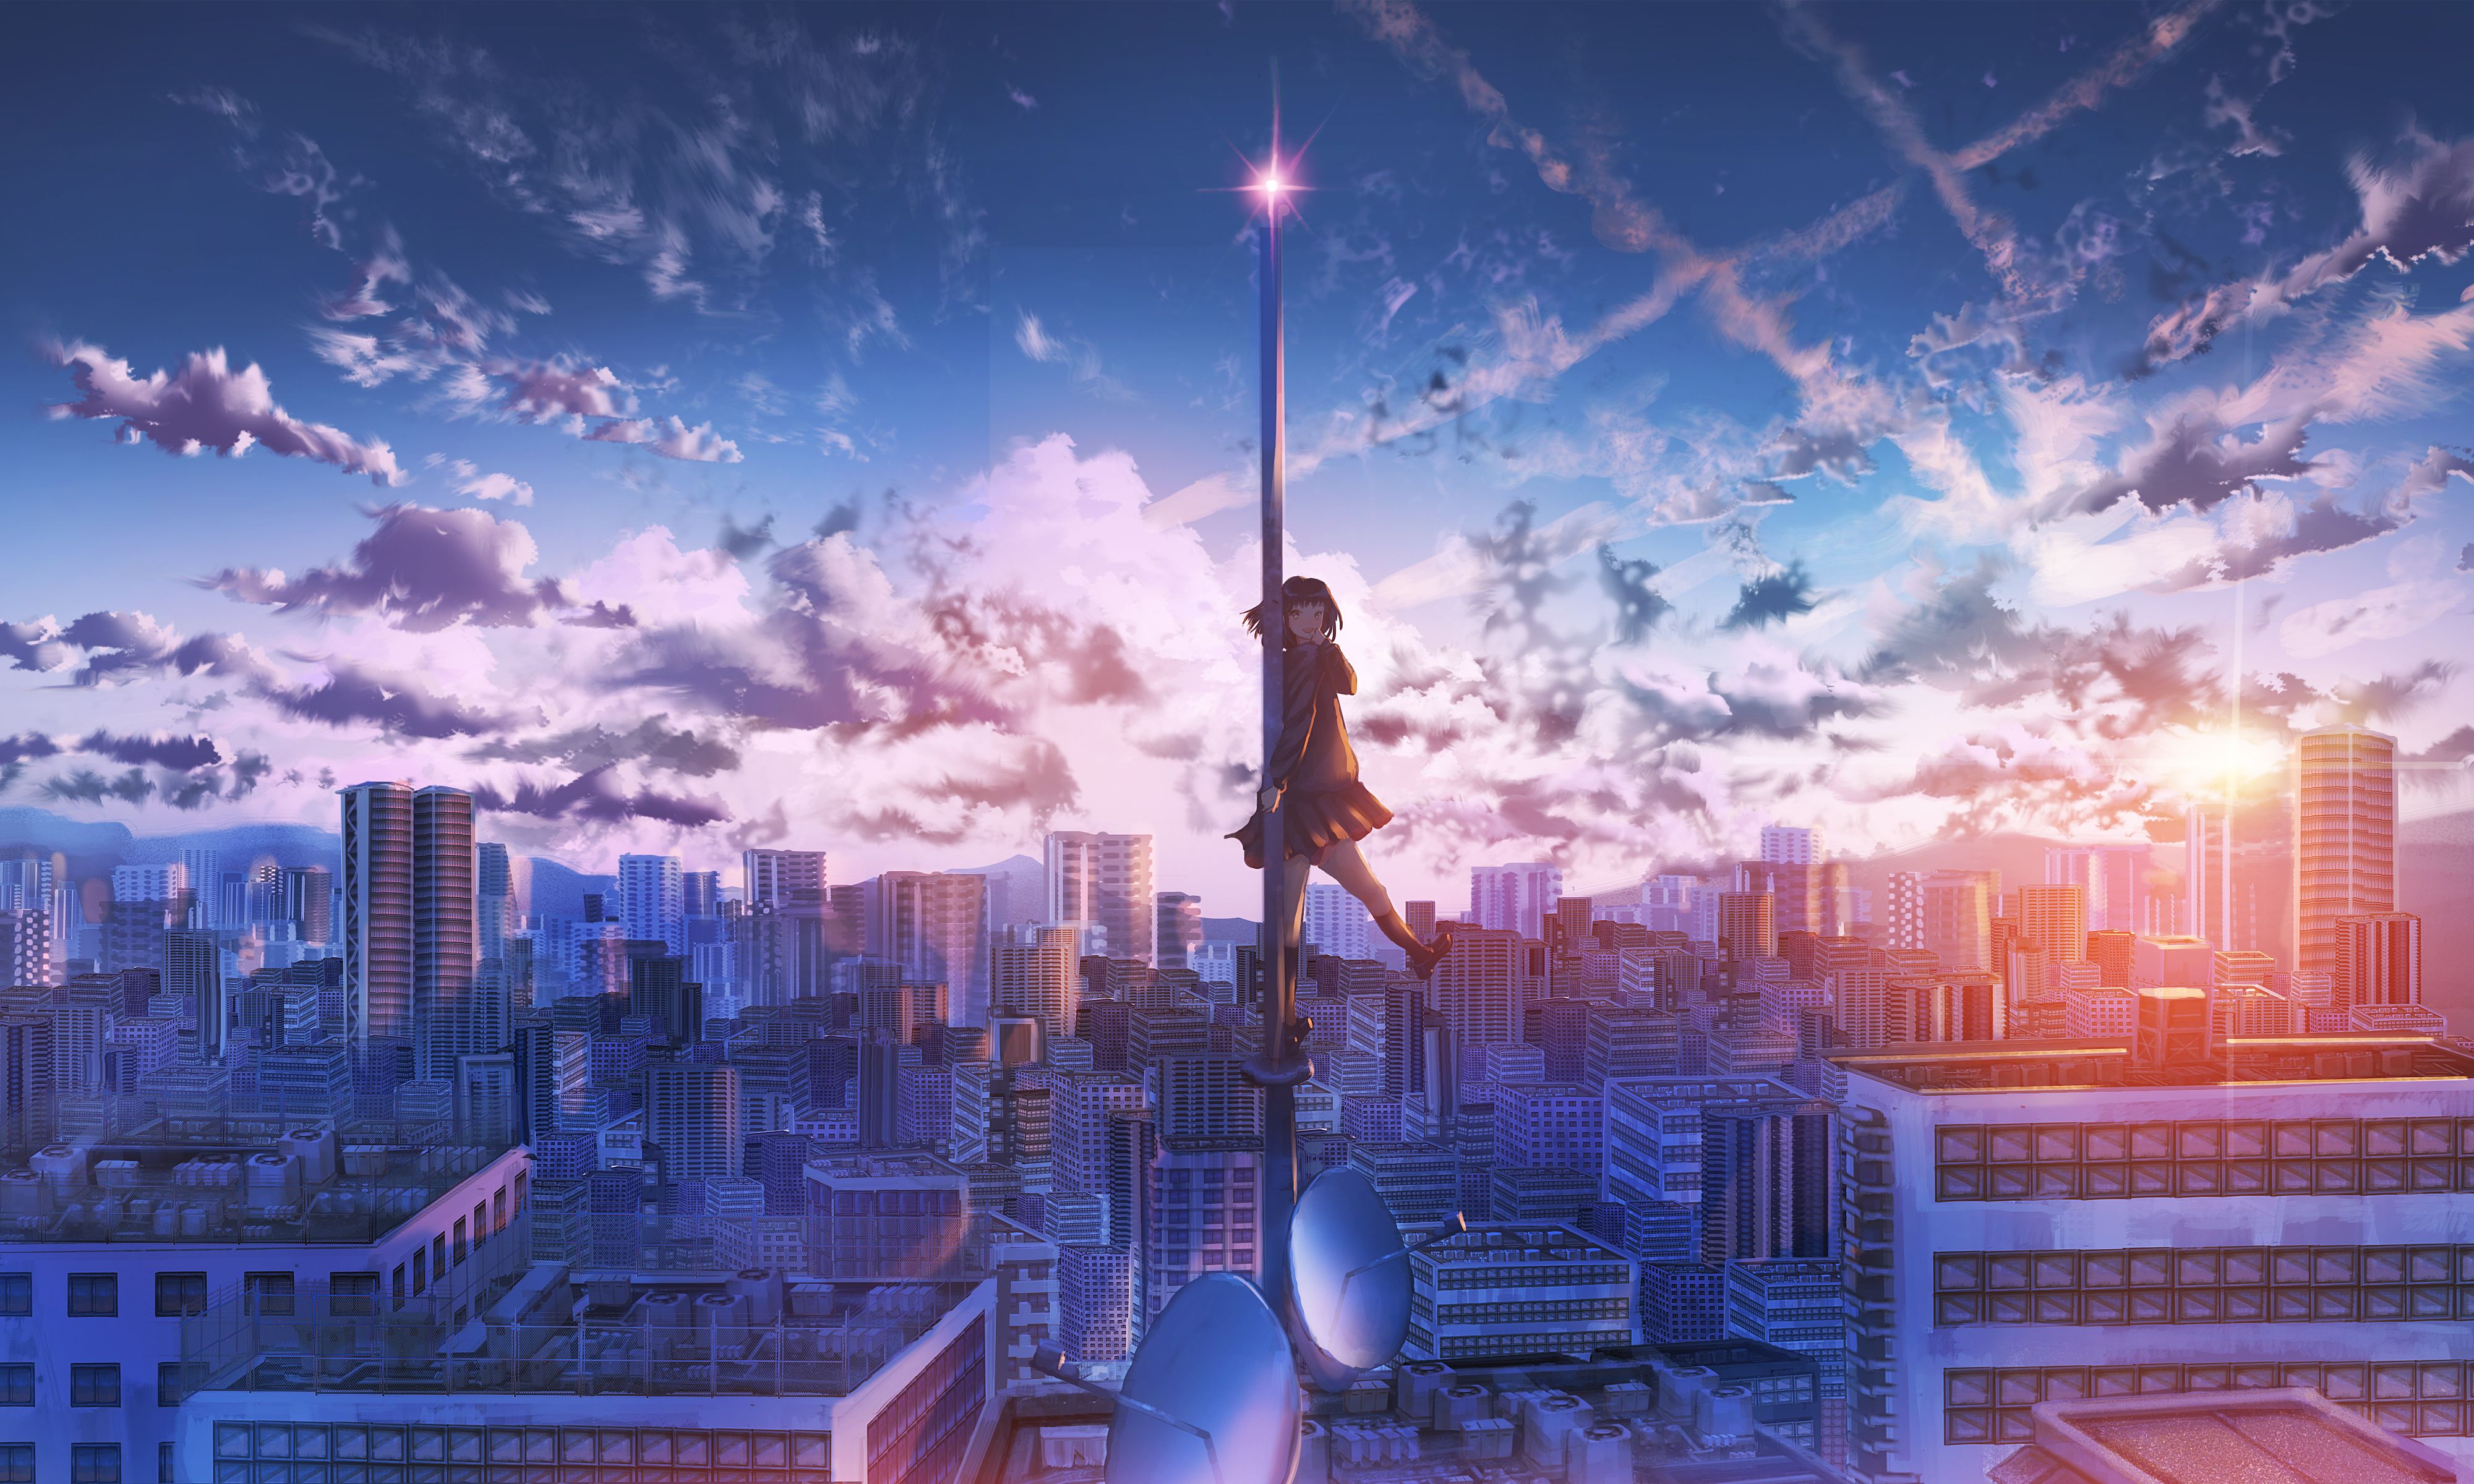 Không gian thành phố anime là nơi nào những nhân vật yêu thích của bạn được sống động hóa. Hãy cùng khám phá cảnh đẹp của thành phố anime trong hình ảnh dưới đây và ngắm nhìn cách nó được tạo nên.